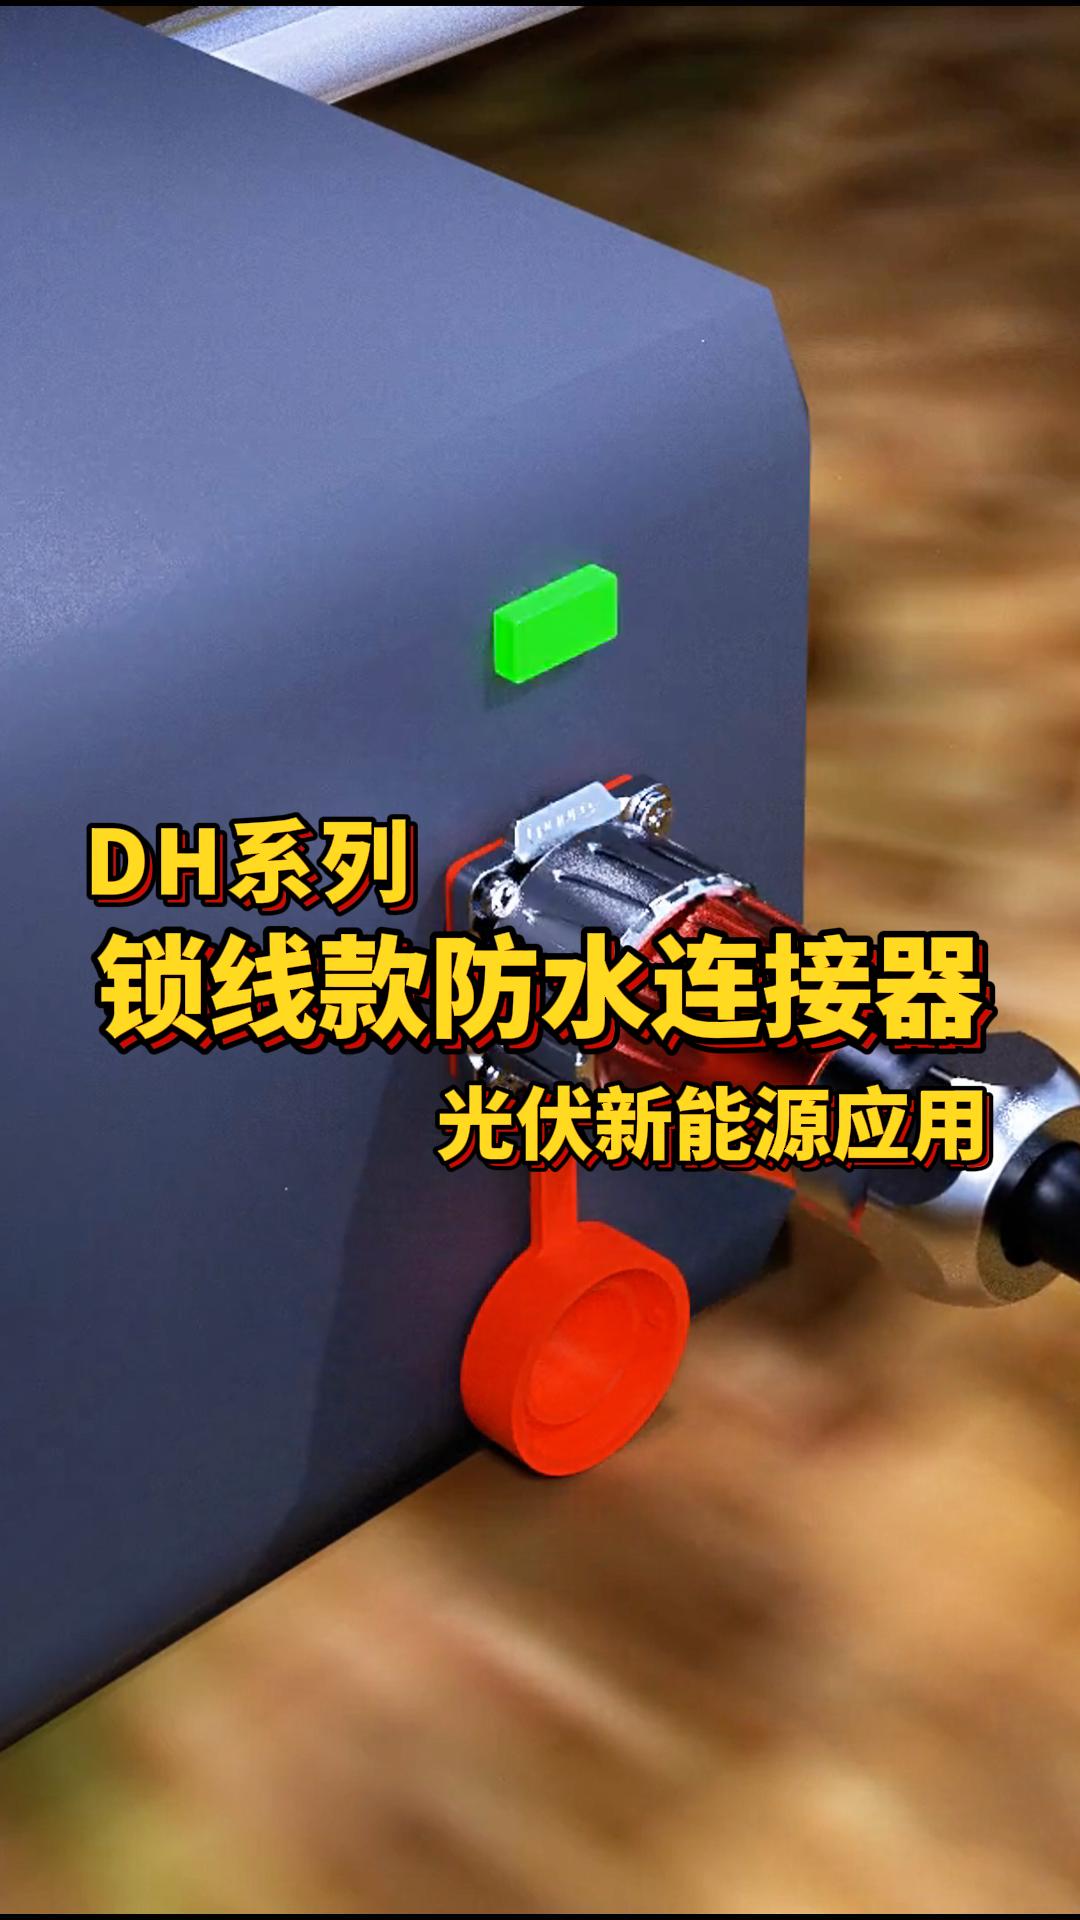 凌科電氣DH系列鎖線款防水連接器光伏新能源應用#防水連接器 #連接器  #光伏 